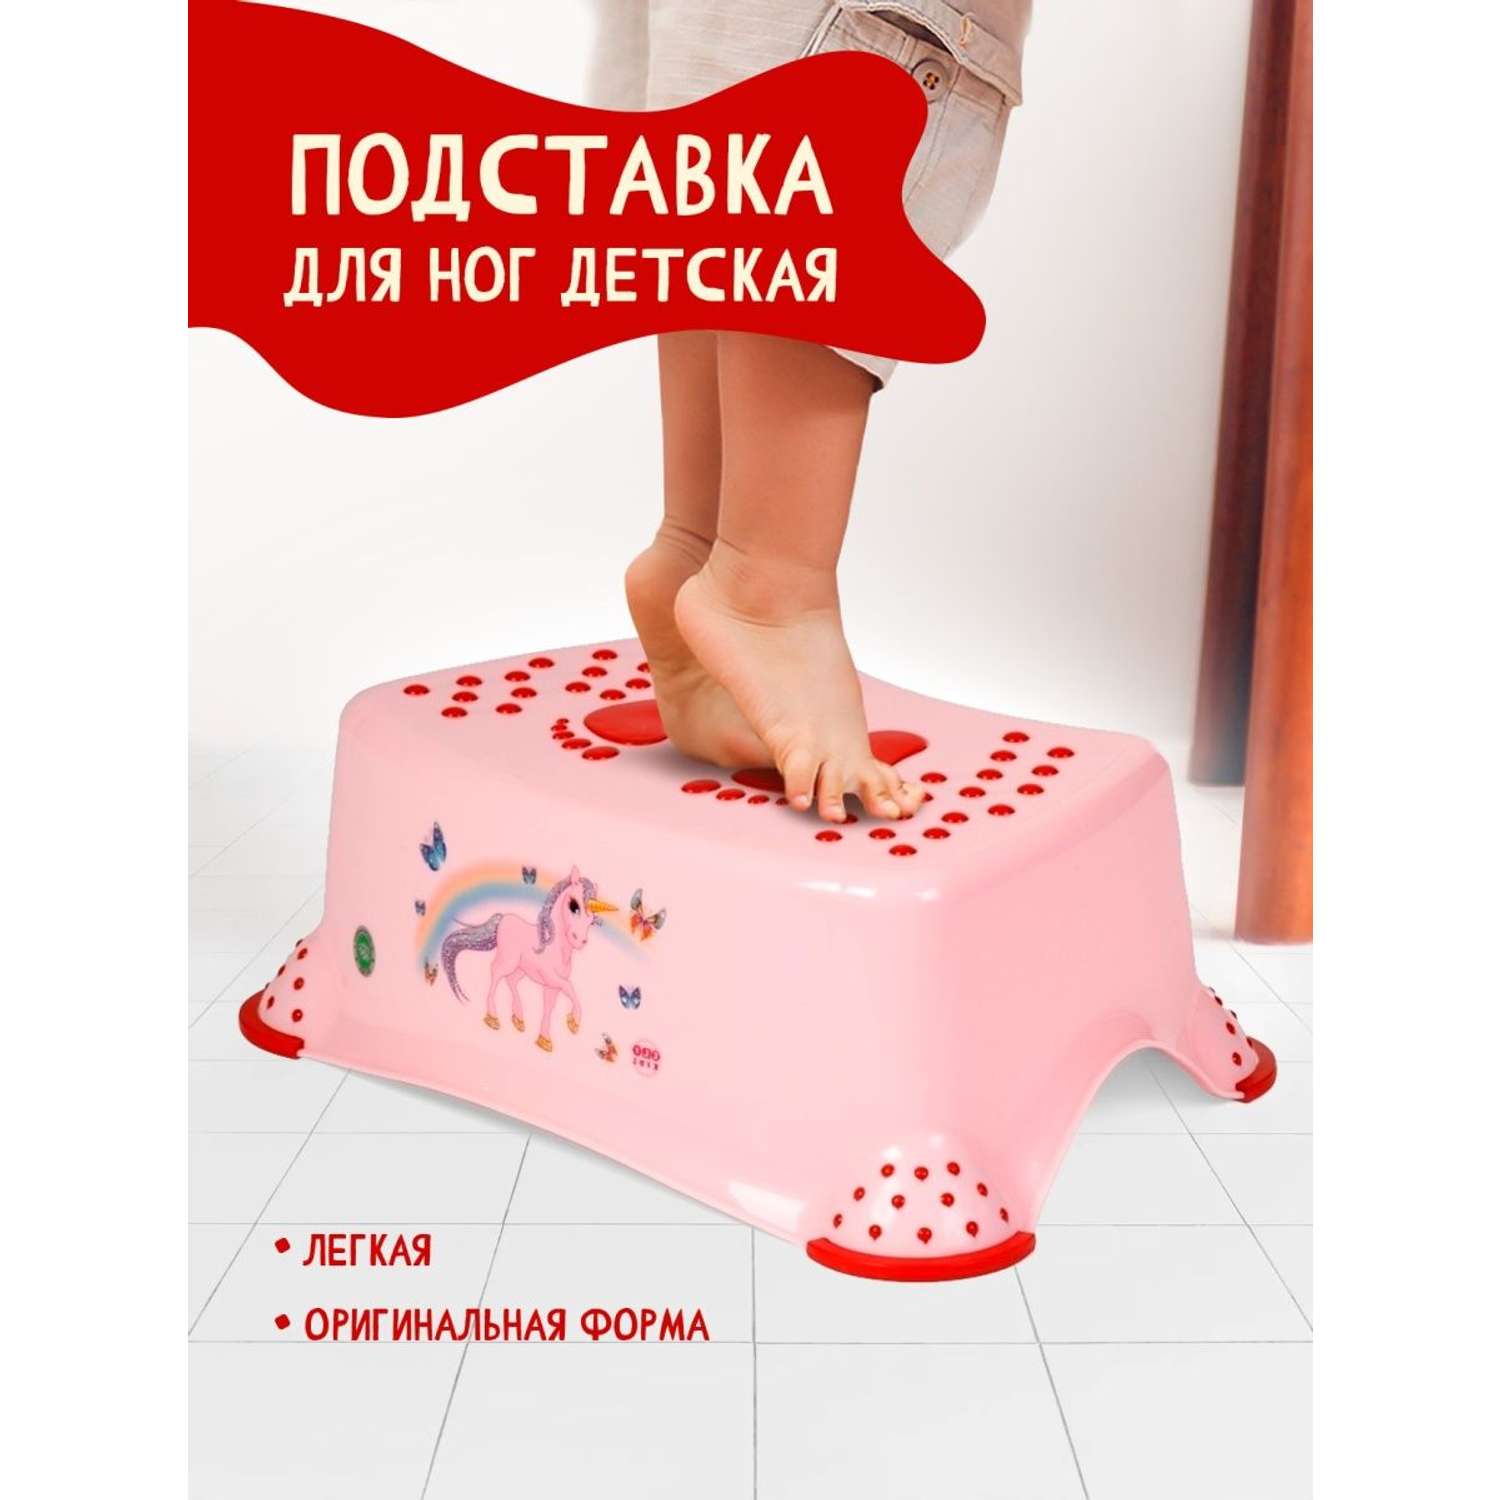 Подставка для ног elfplast детская розовый - фото 1